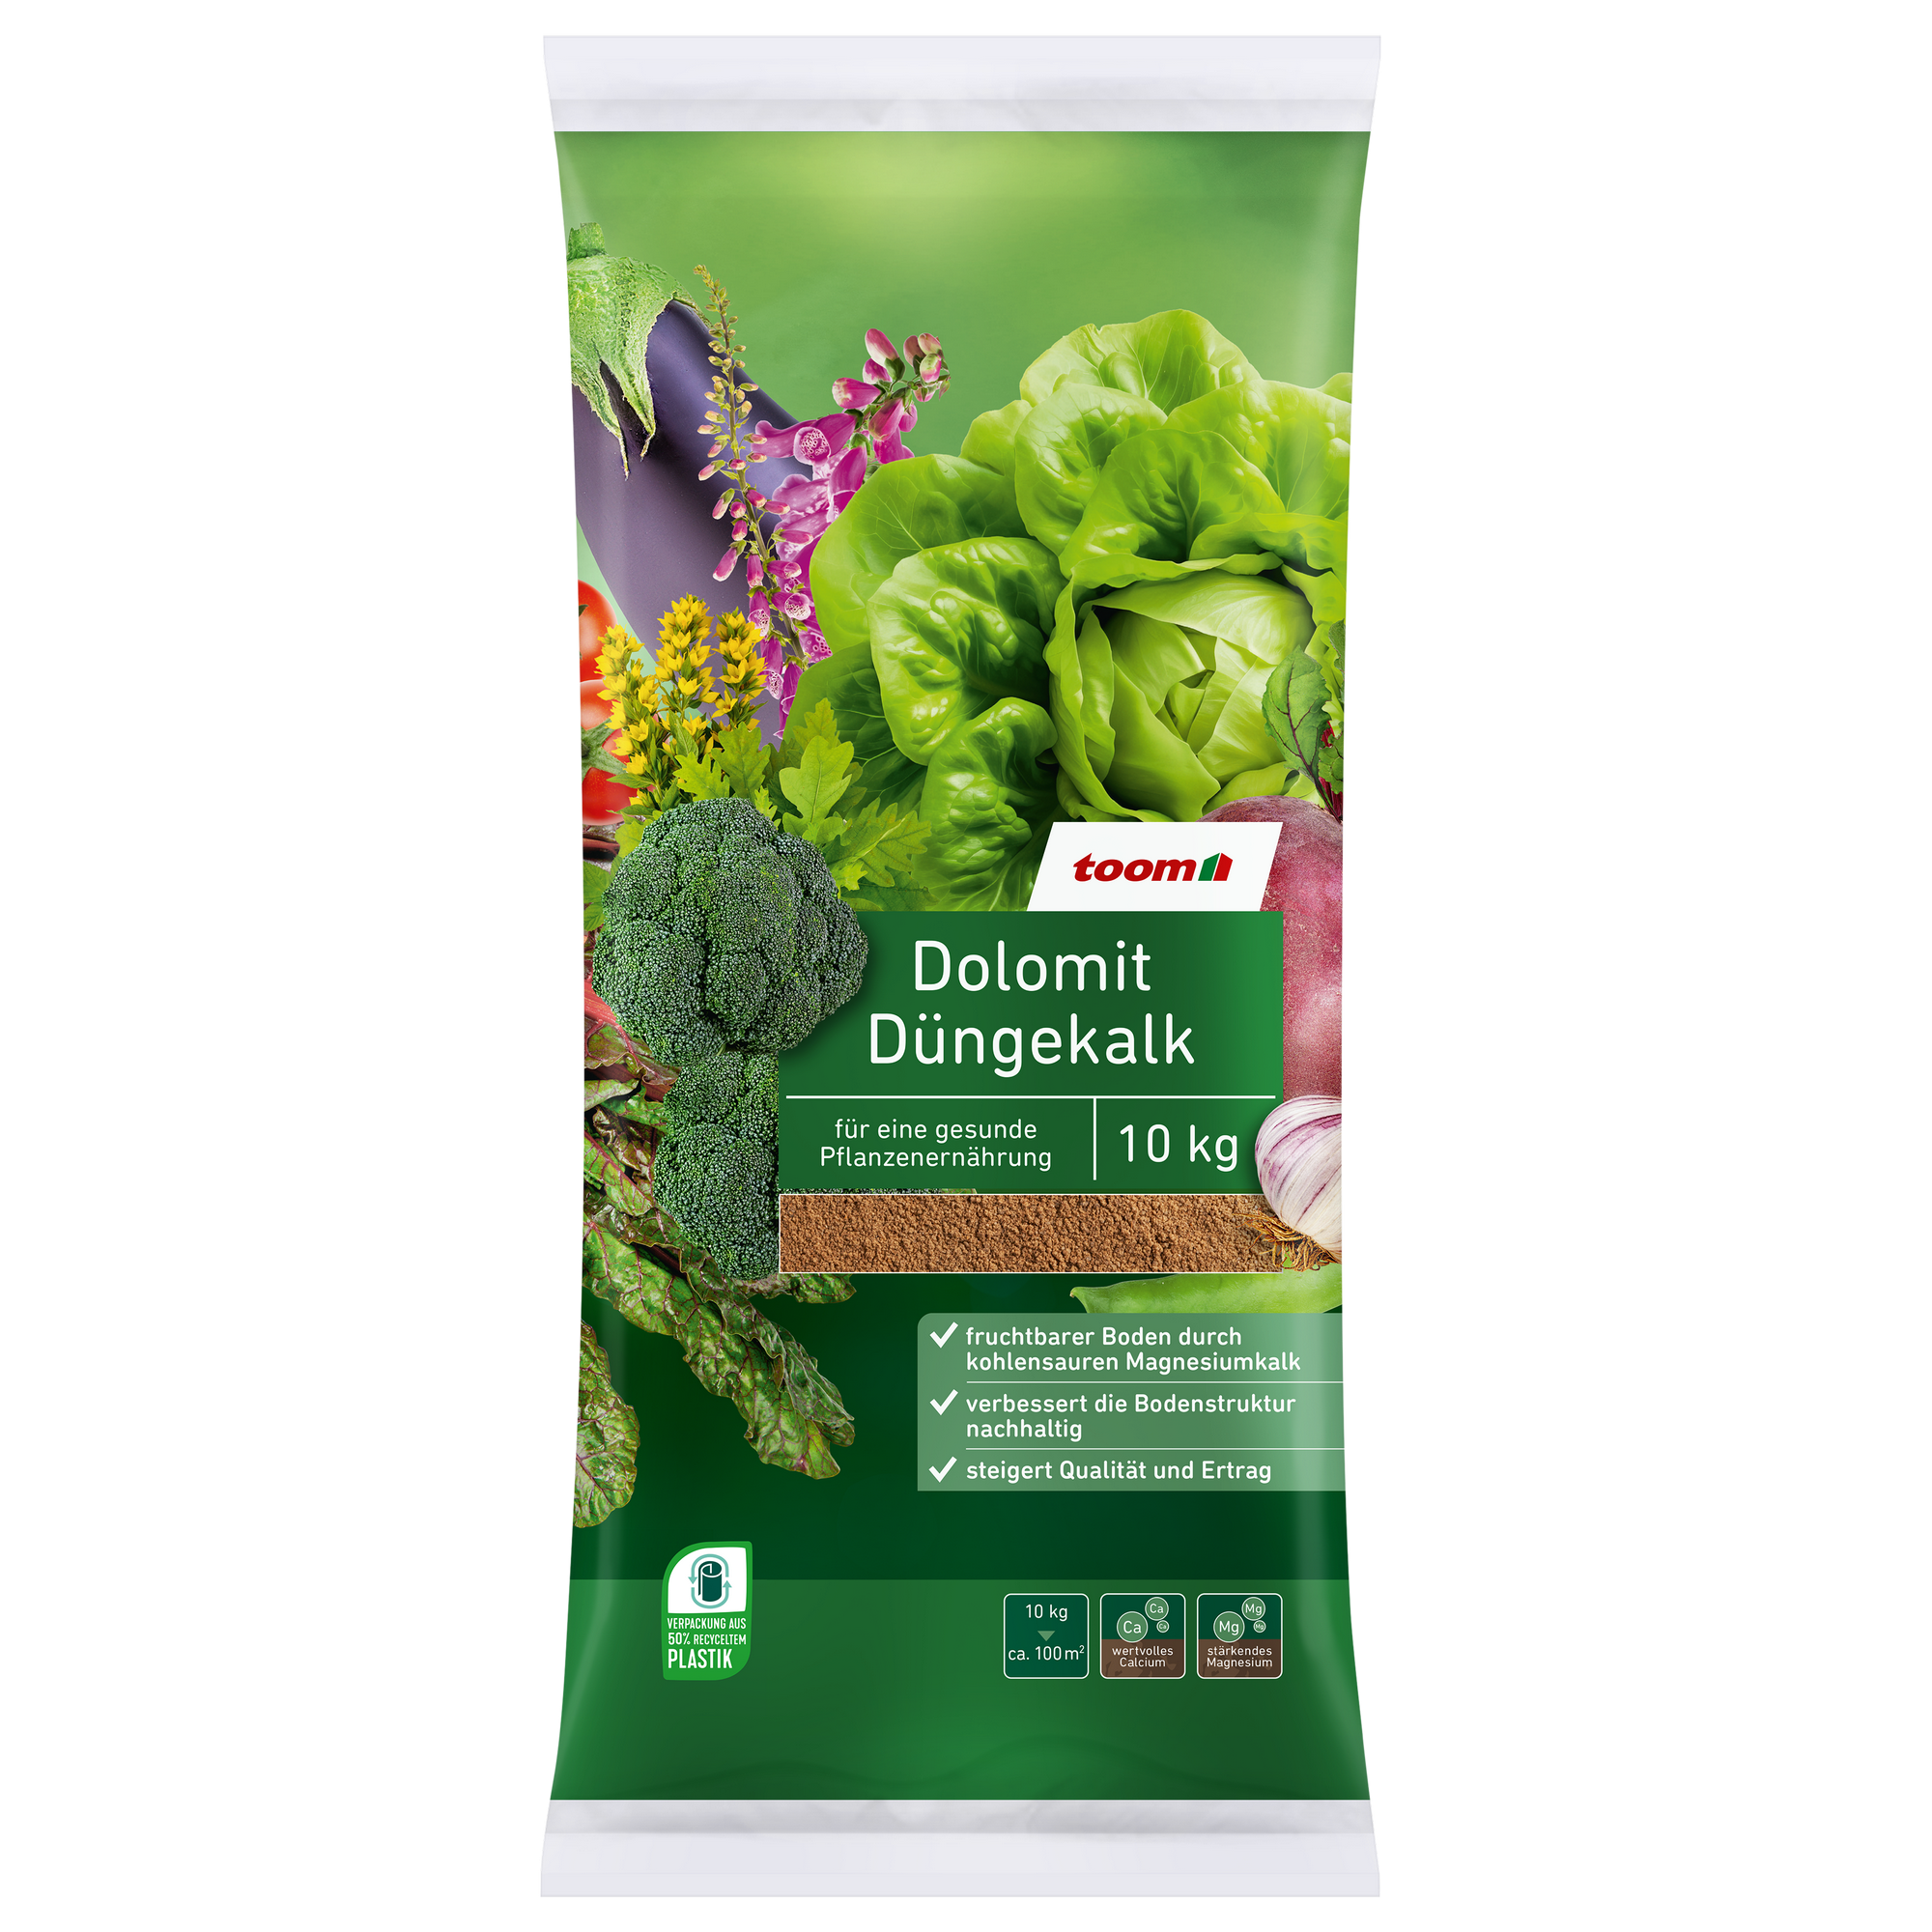 Düngekalk 'Dolomit' 10 kg + product picture